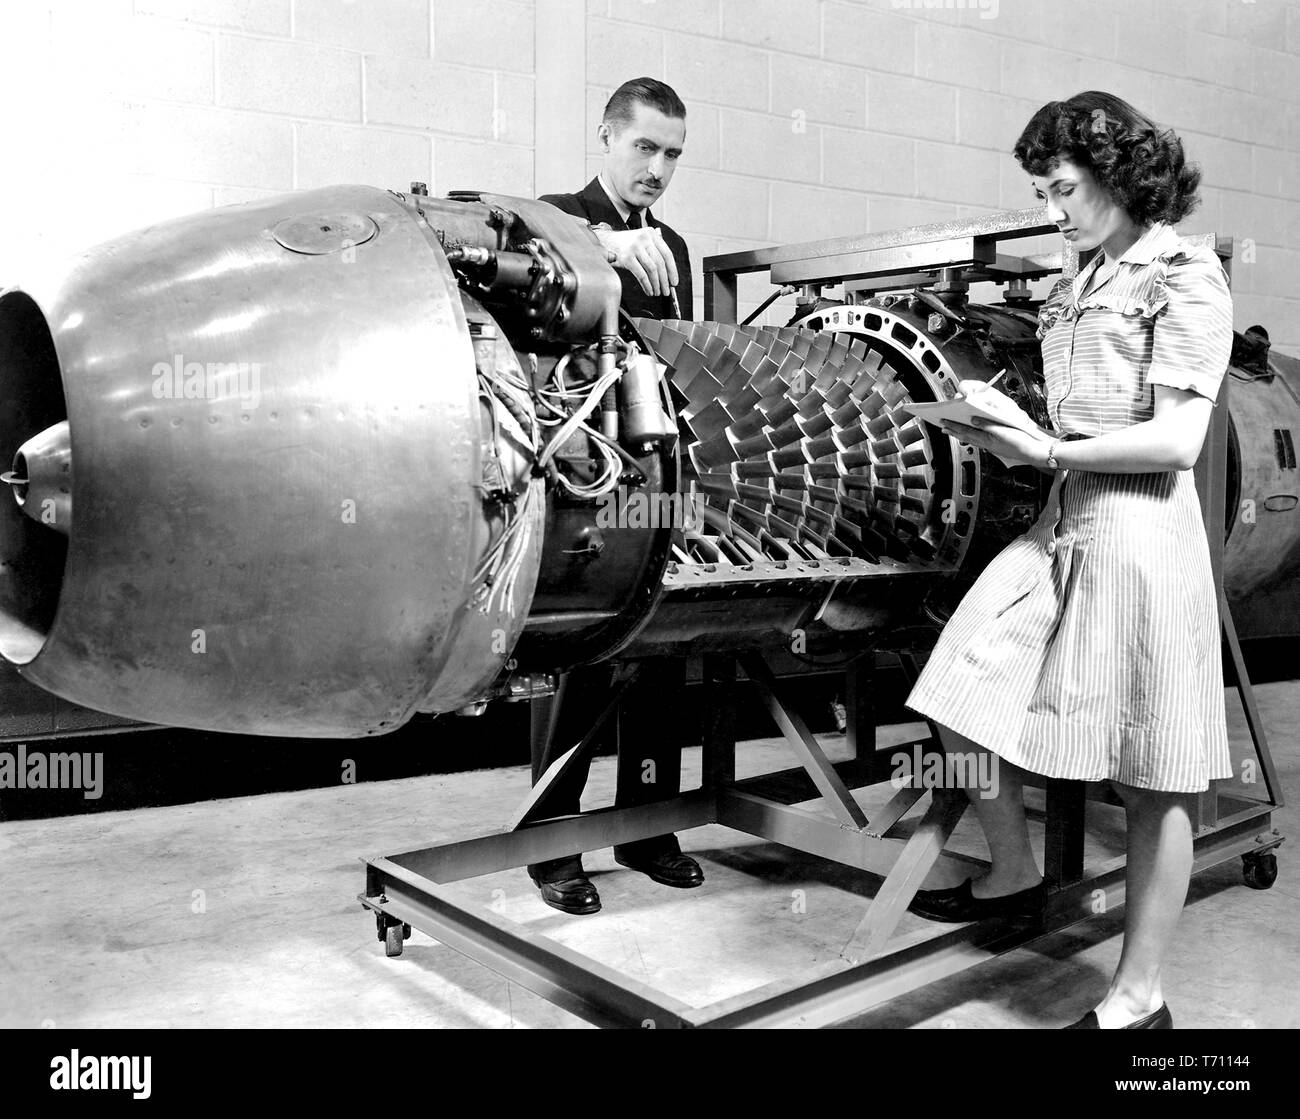 I dipendenti della NASA di ispezionare il JUMO 004 motore Jet con il coperchio rimosso al motore del velivolo laboratorio di ricerca il comitato consultivo nazionale per l'aeronautica (NACA), Cleveland, Ohio, 24 marzo 1946. Immagine cortesia Nazionale Aeronautica e Spaziale Administration (NASA). () Foto Stock